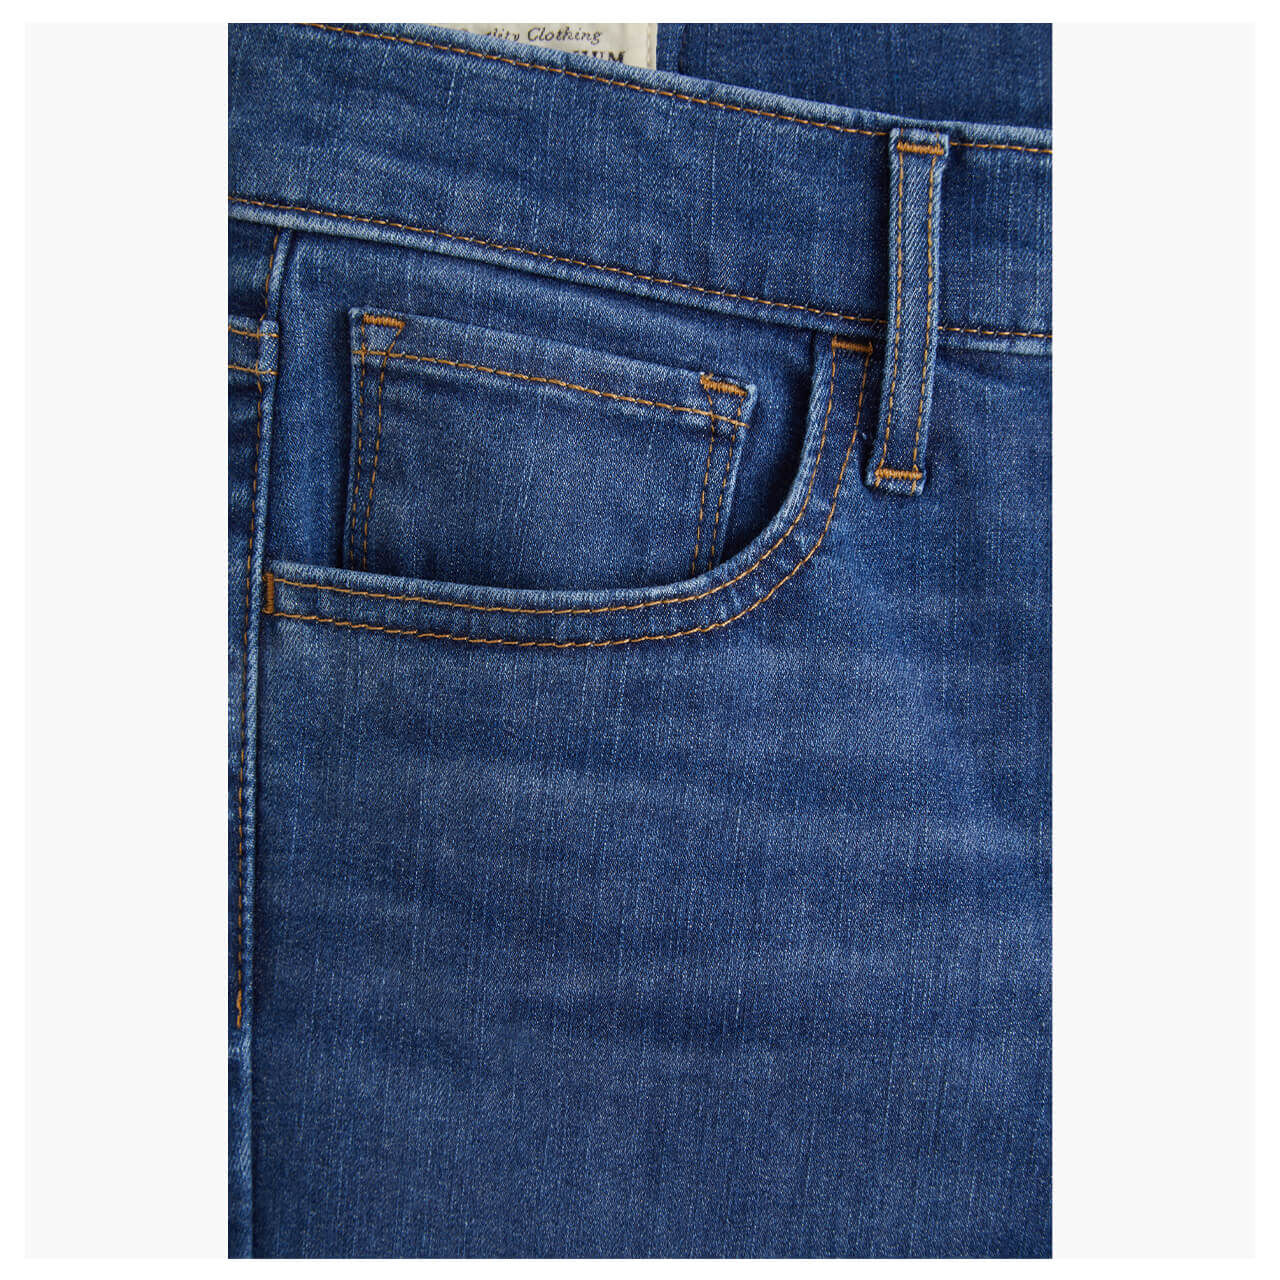 Levis Jeans 720 für Damen in Mittelblau angewaschen, FarbNr.: 0259